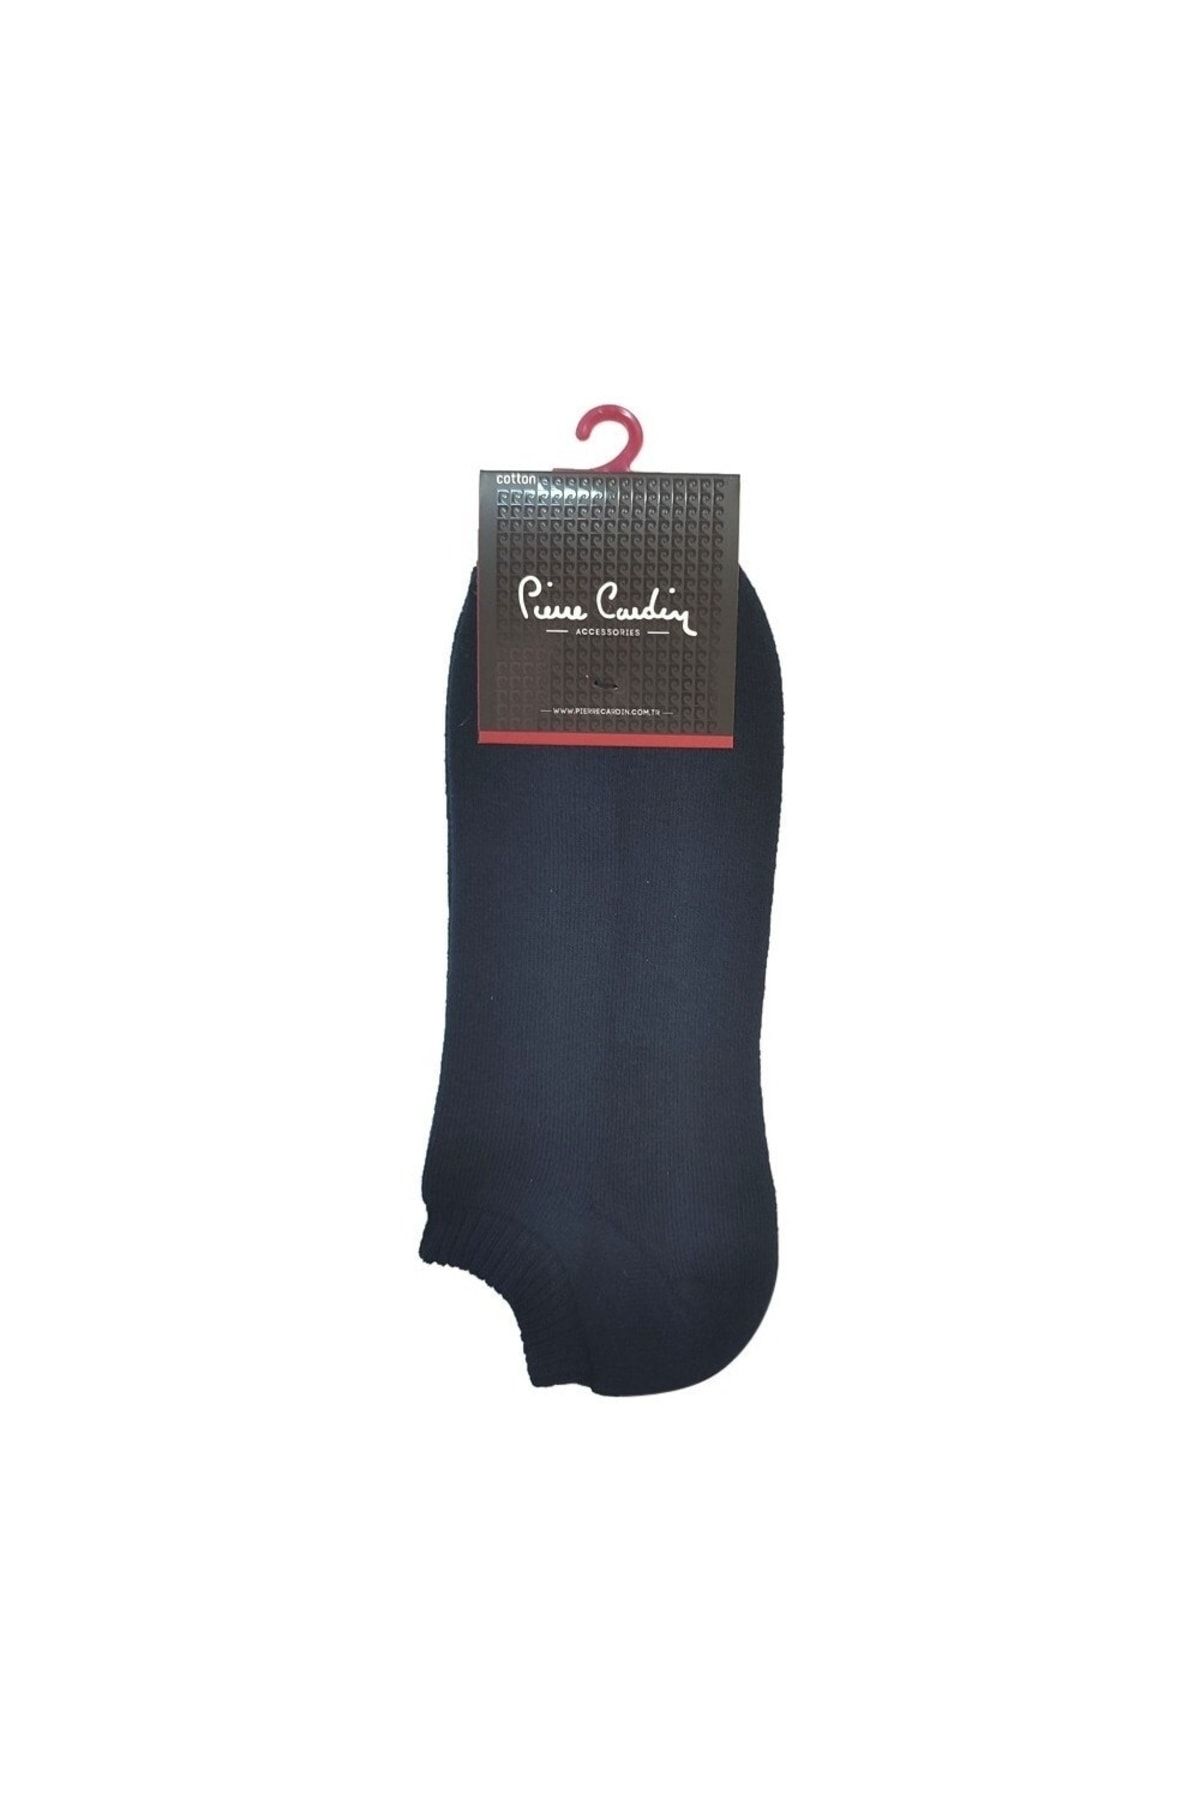 Pierre Cardin Pier Cardin Kadın 36-40 Havlu 3lü Patik Çorap Pıer4300-3